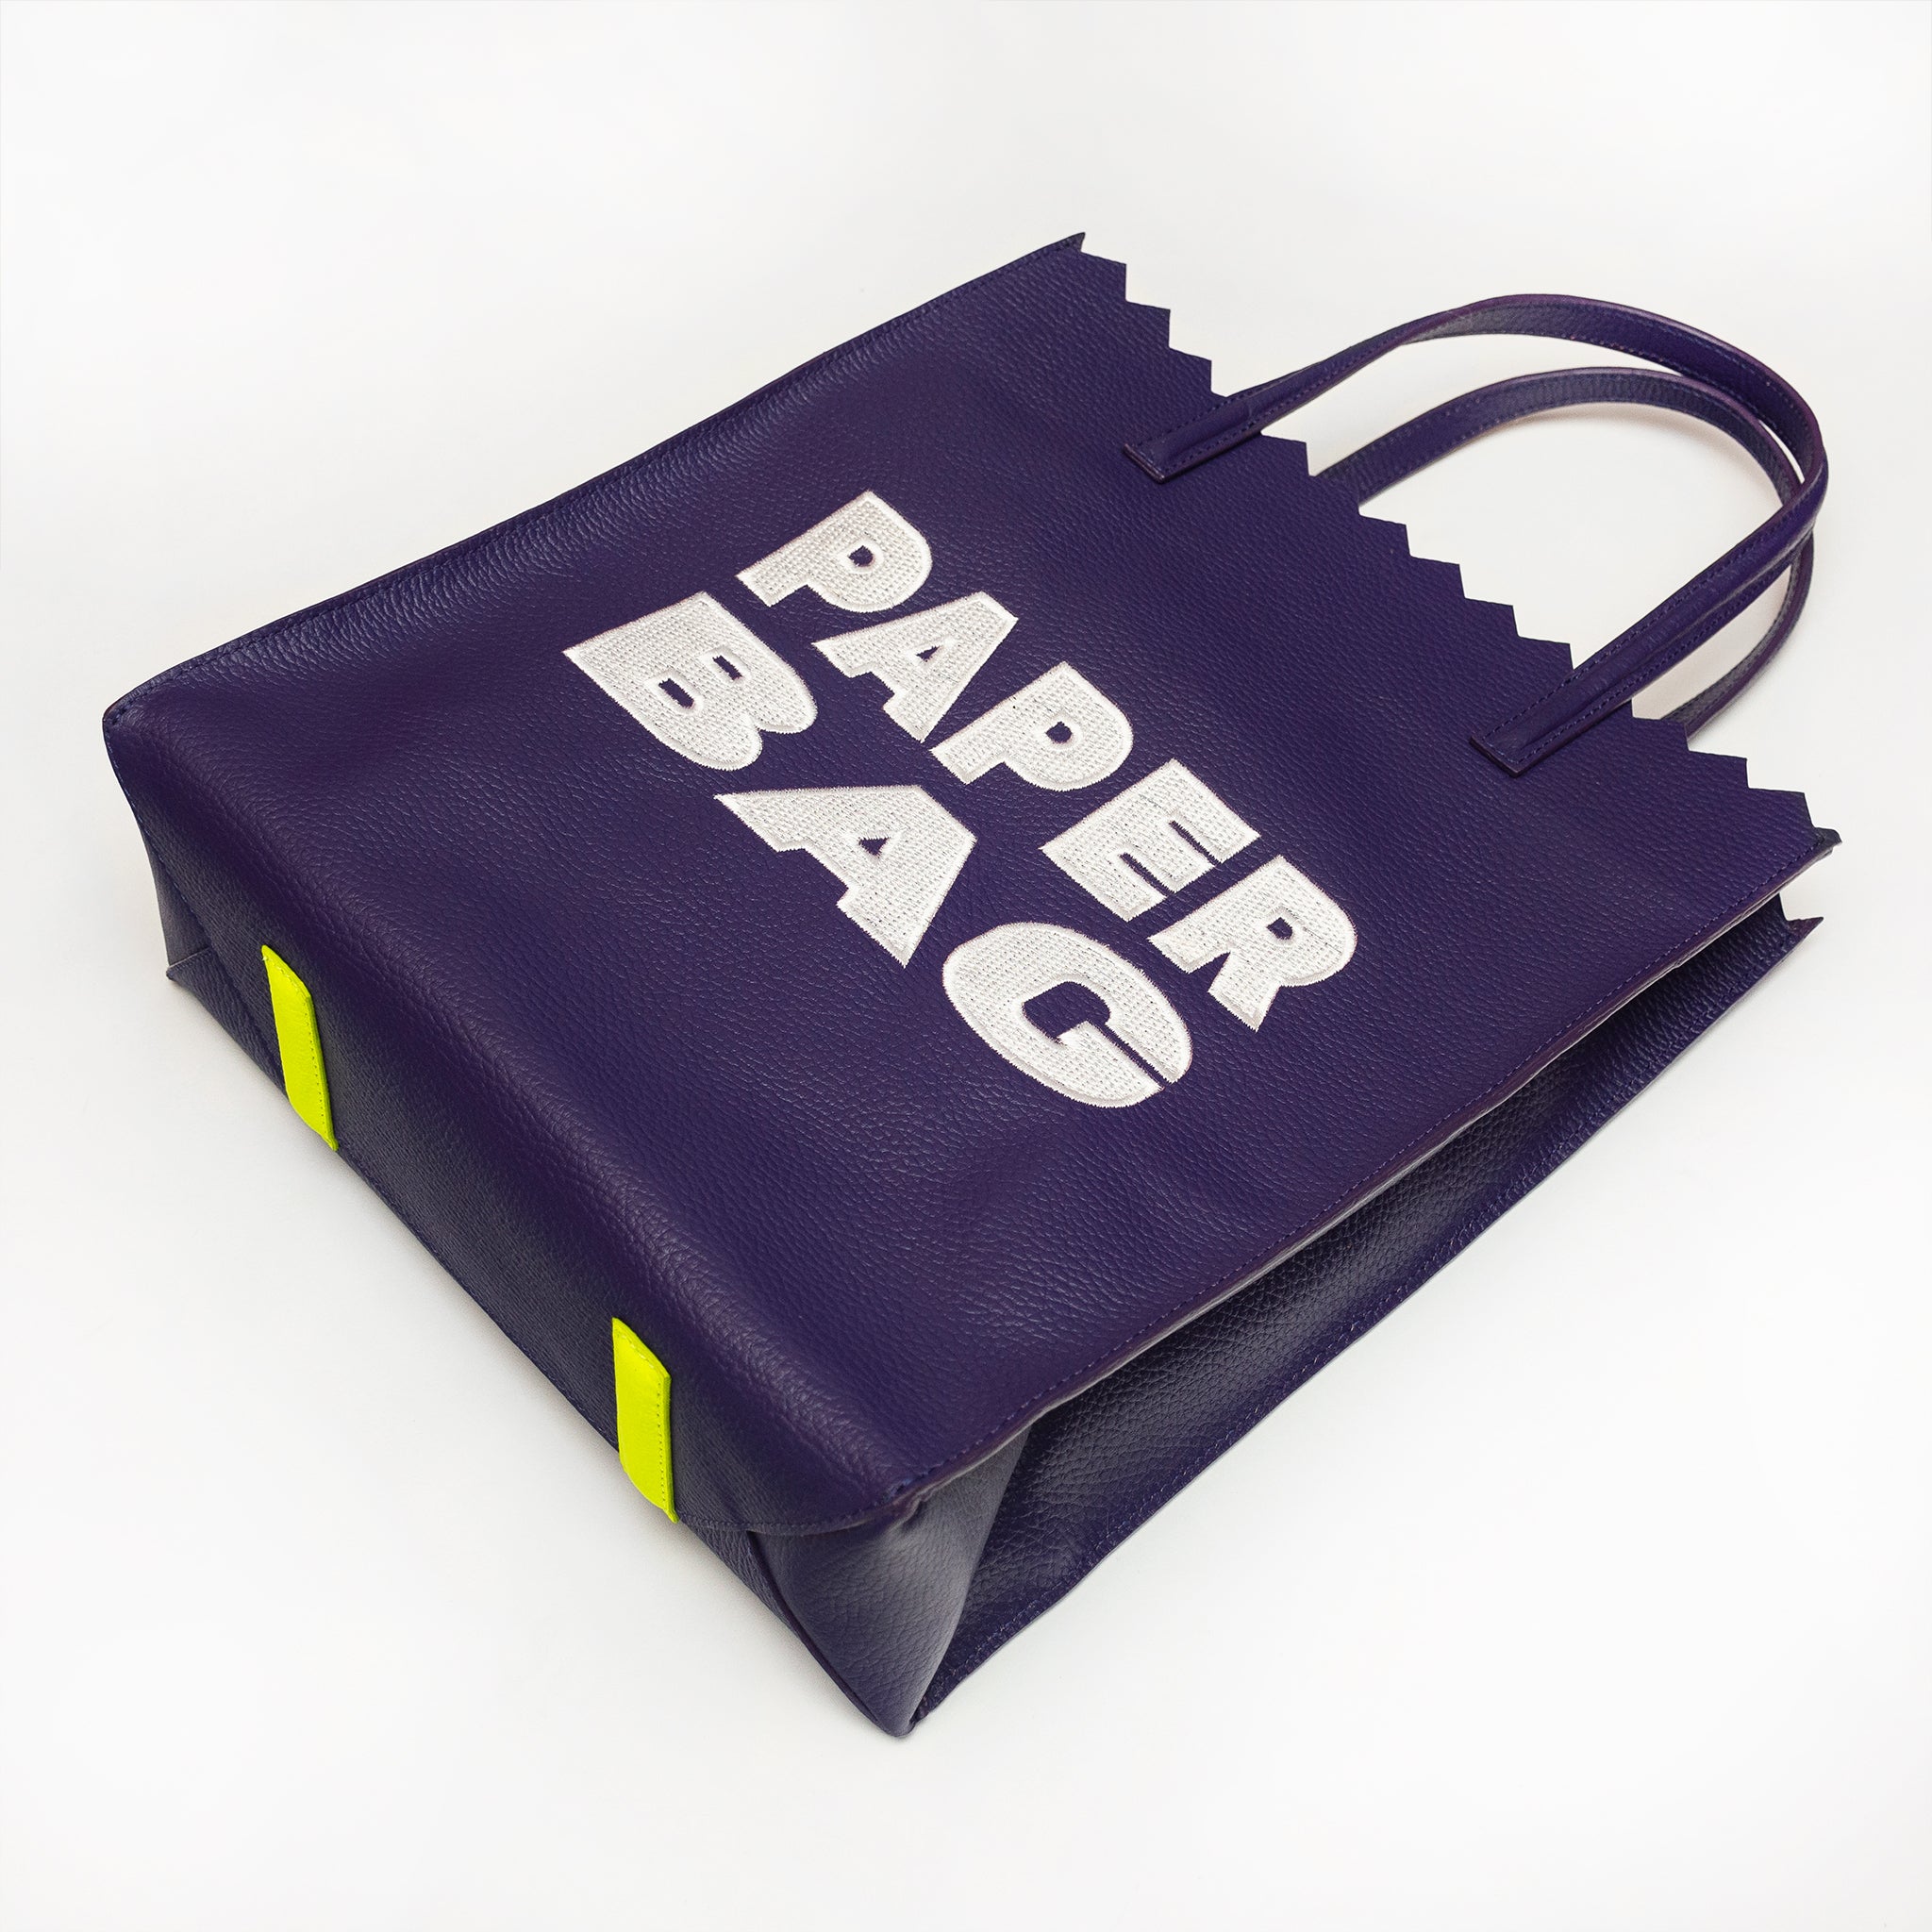 PAPER bag - VIOLETA obispo + BORDADO beige -